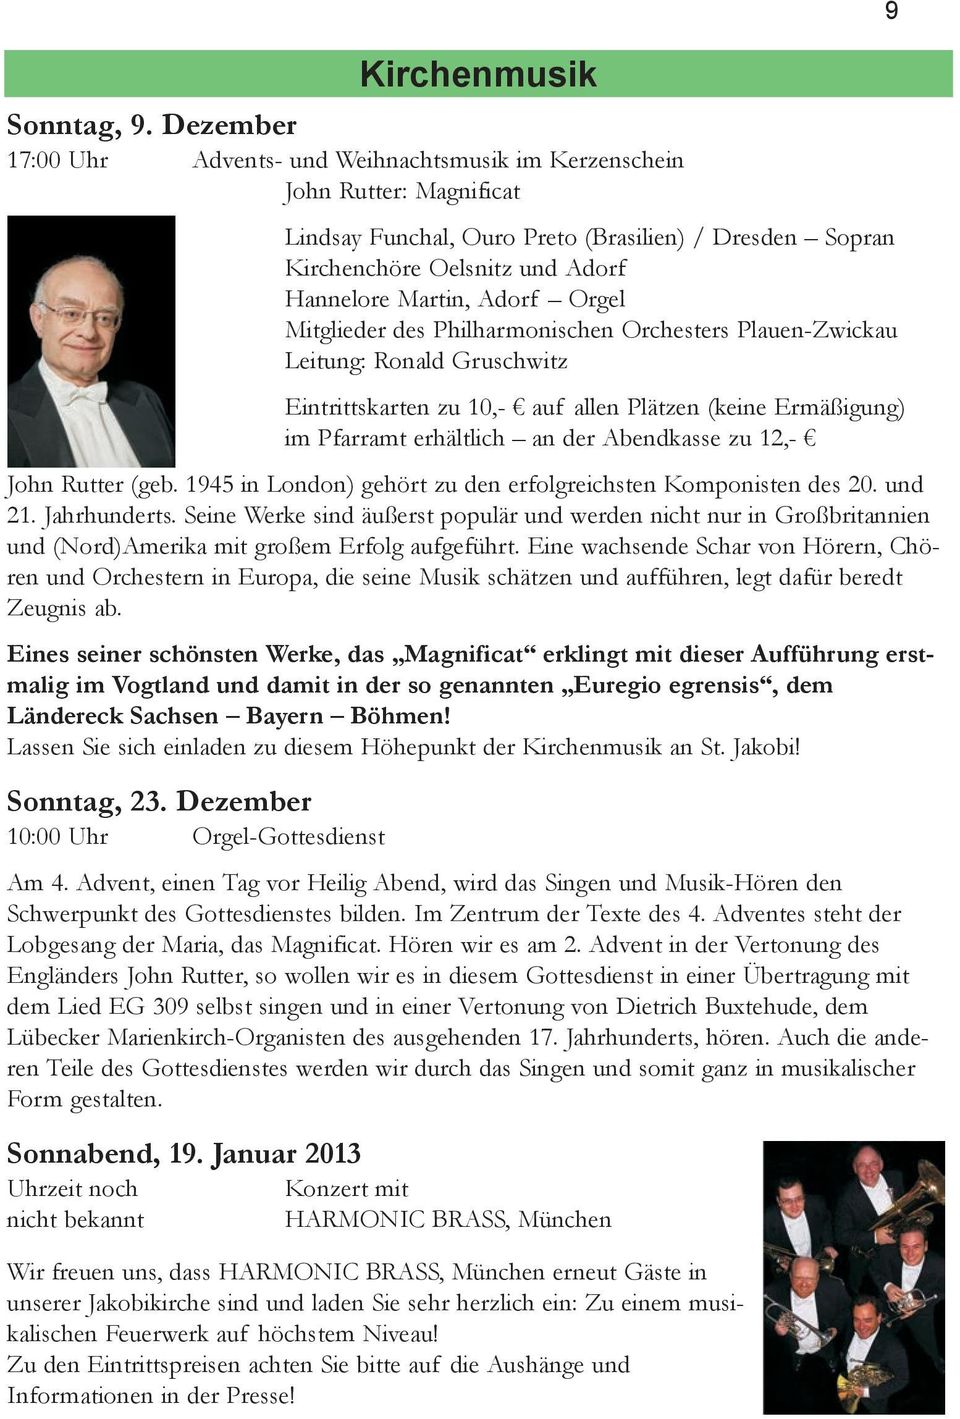 Adorf Orgel Mitglieder des Philharmonischen Orchesters Plauen-Zwickau Leitung: Ronald Gruschwitz Eintrittskarten zu 10,- auf allen Plätzen (keine Ermäßigung) im Pfarramt erhältlich an der Abendkasse